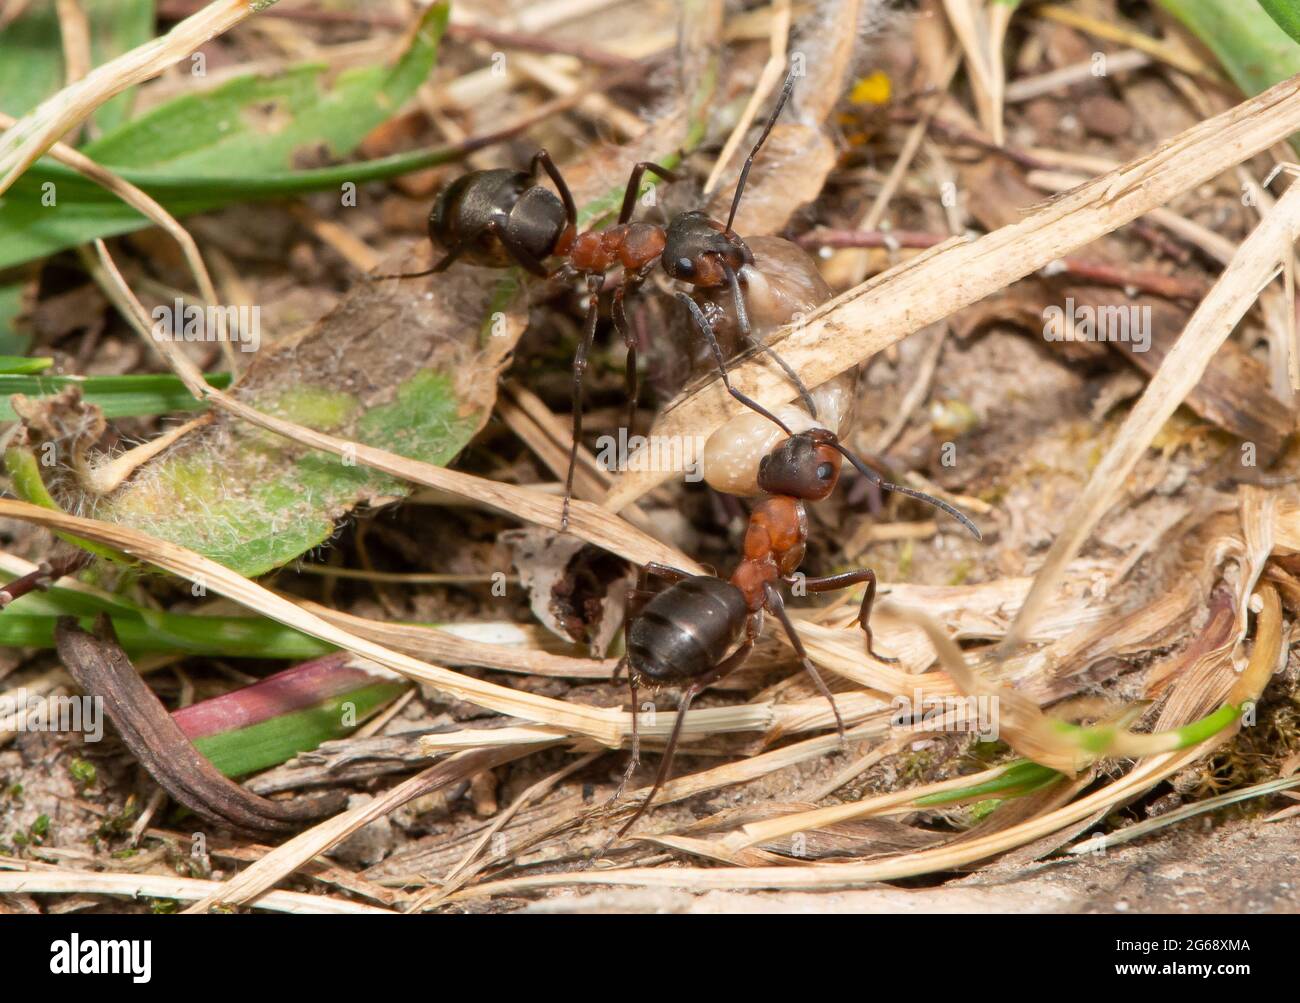 Hormigas de madera del sur que llevan un grub, Arnside, Cumbria del sur, Reino Unido. Las hormigas construyen sus nidos en lugares soleados y protegidos y son más activas en primavera y Foto de stock